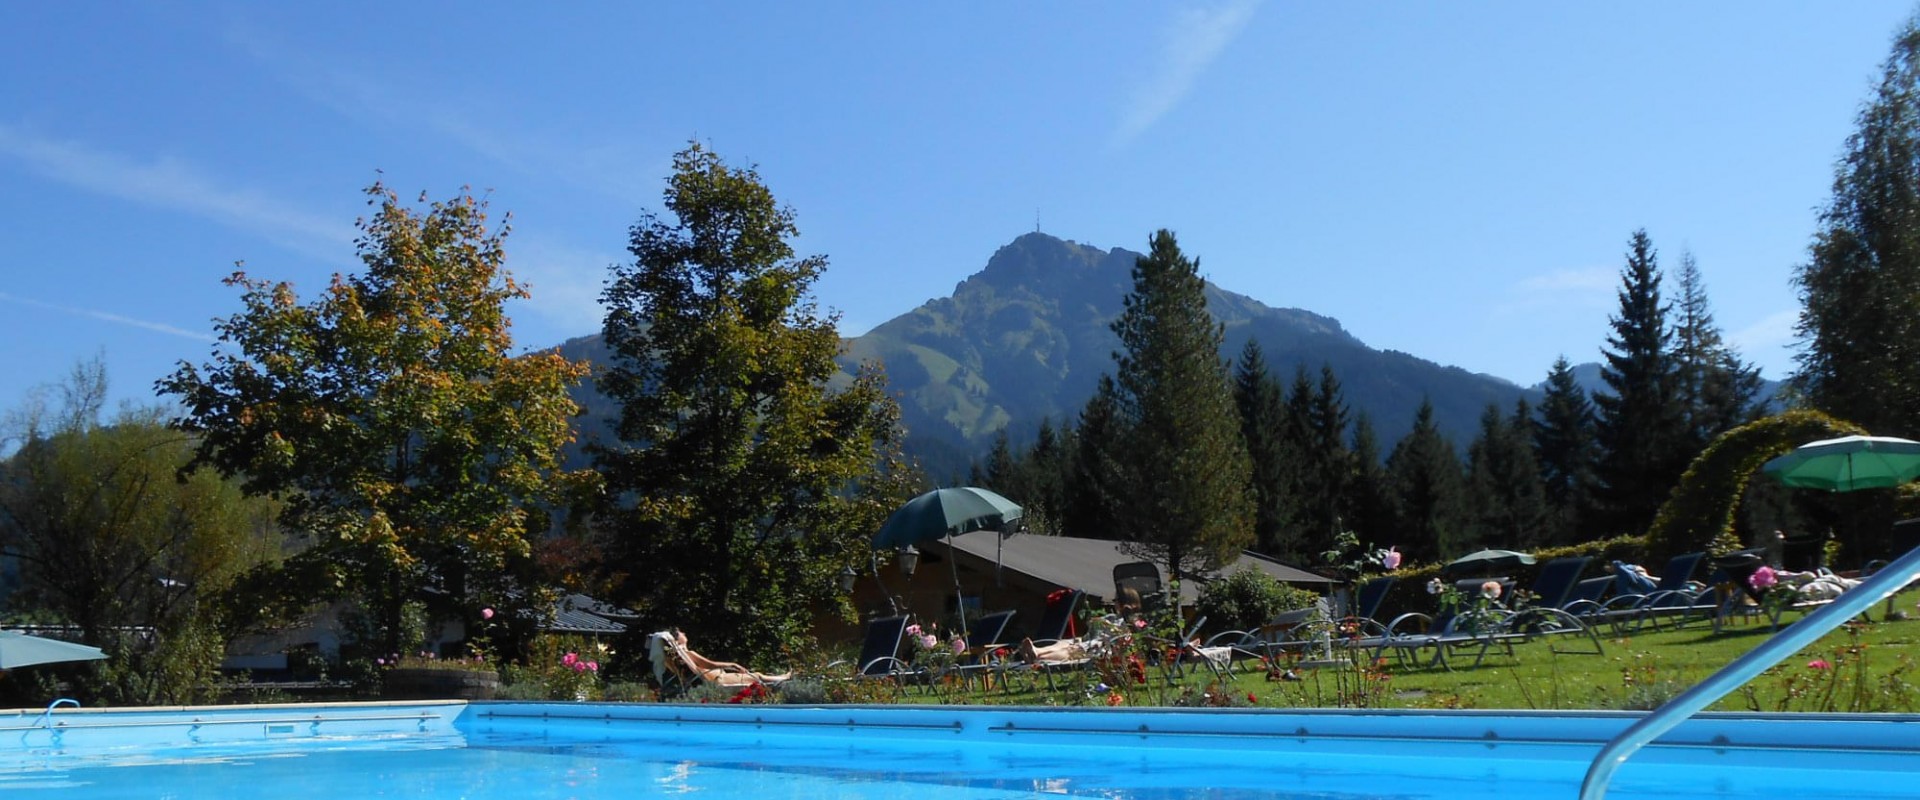 Schwimmbad beheitzt Gartenhotel Rosenhof bei Kitzbühel